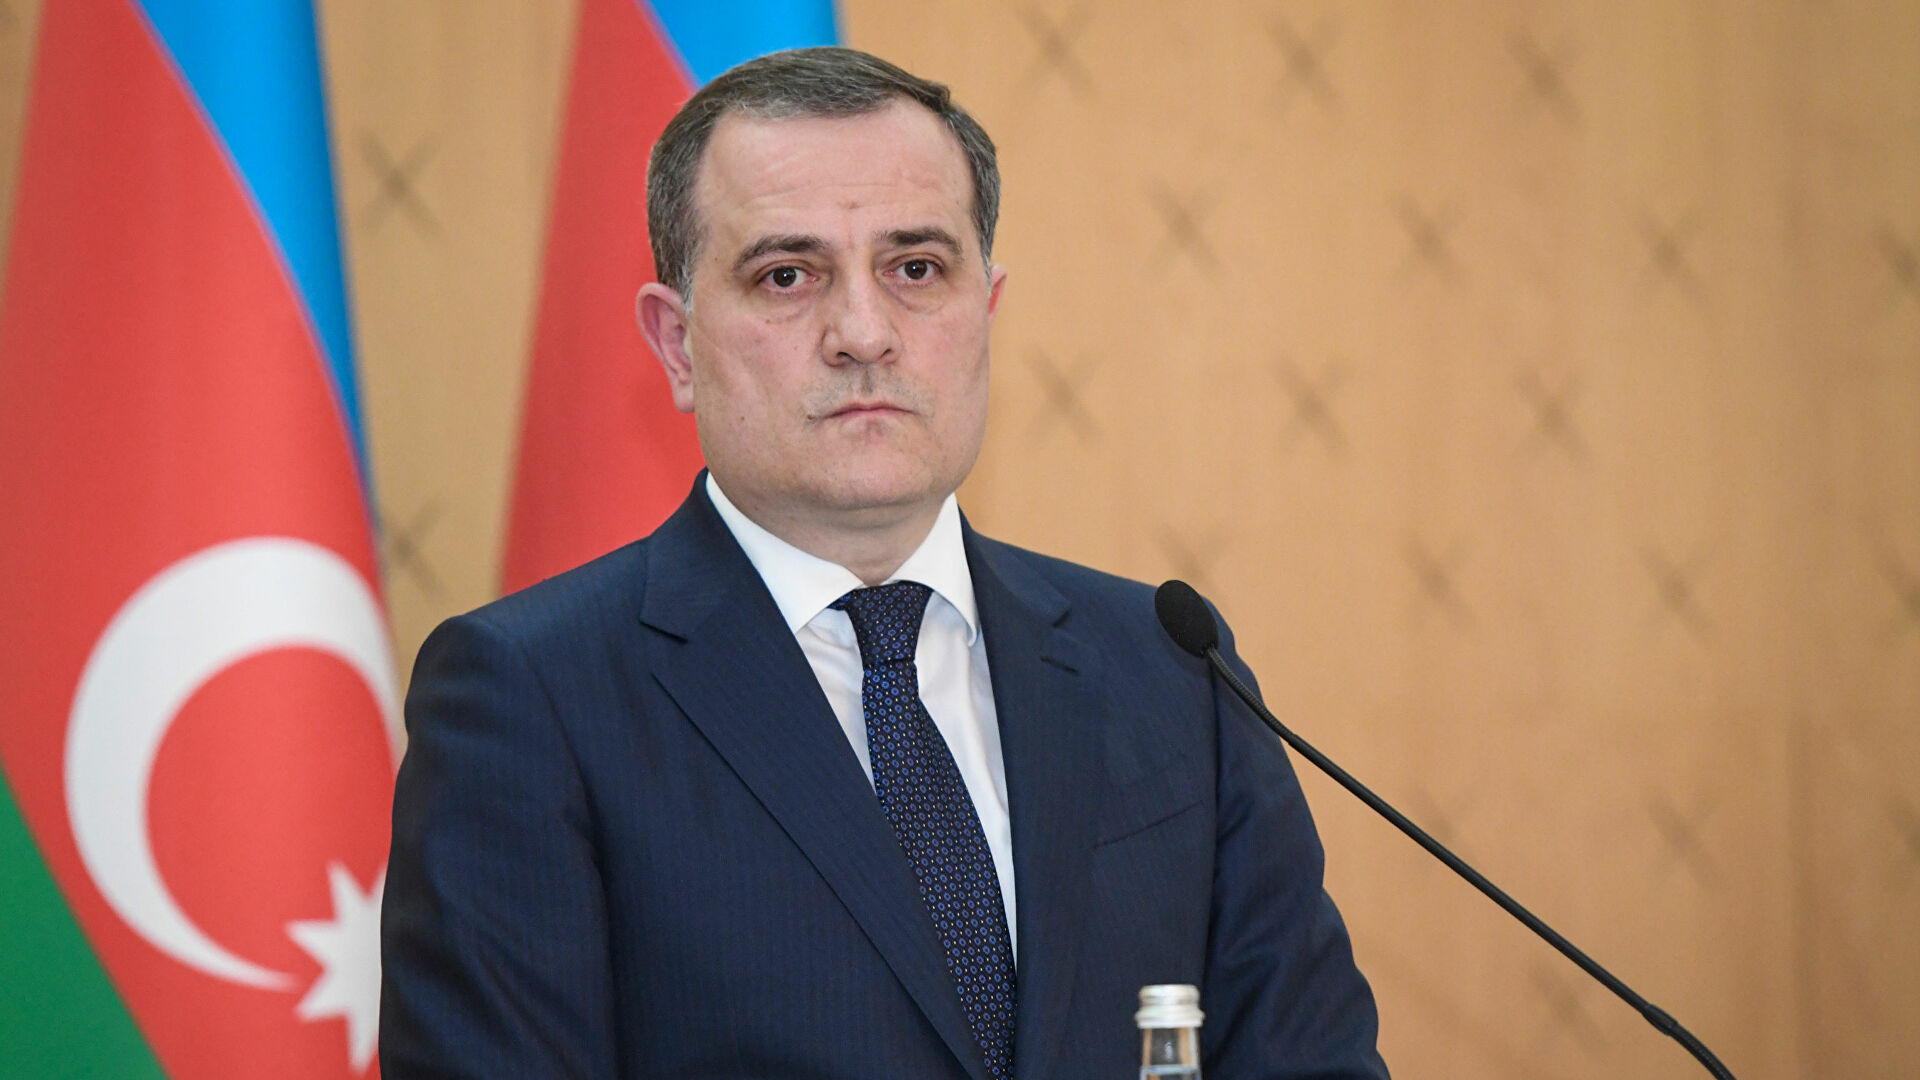 Azerbaijan's Foreign Minister expressed his condolences to Georgia